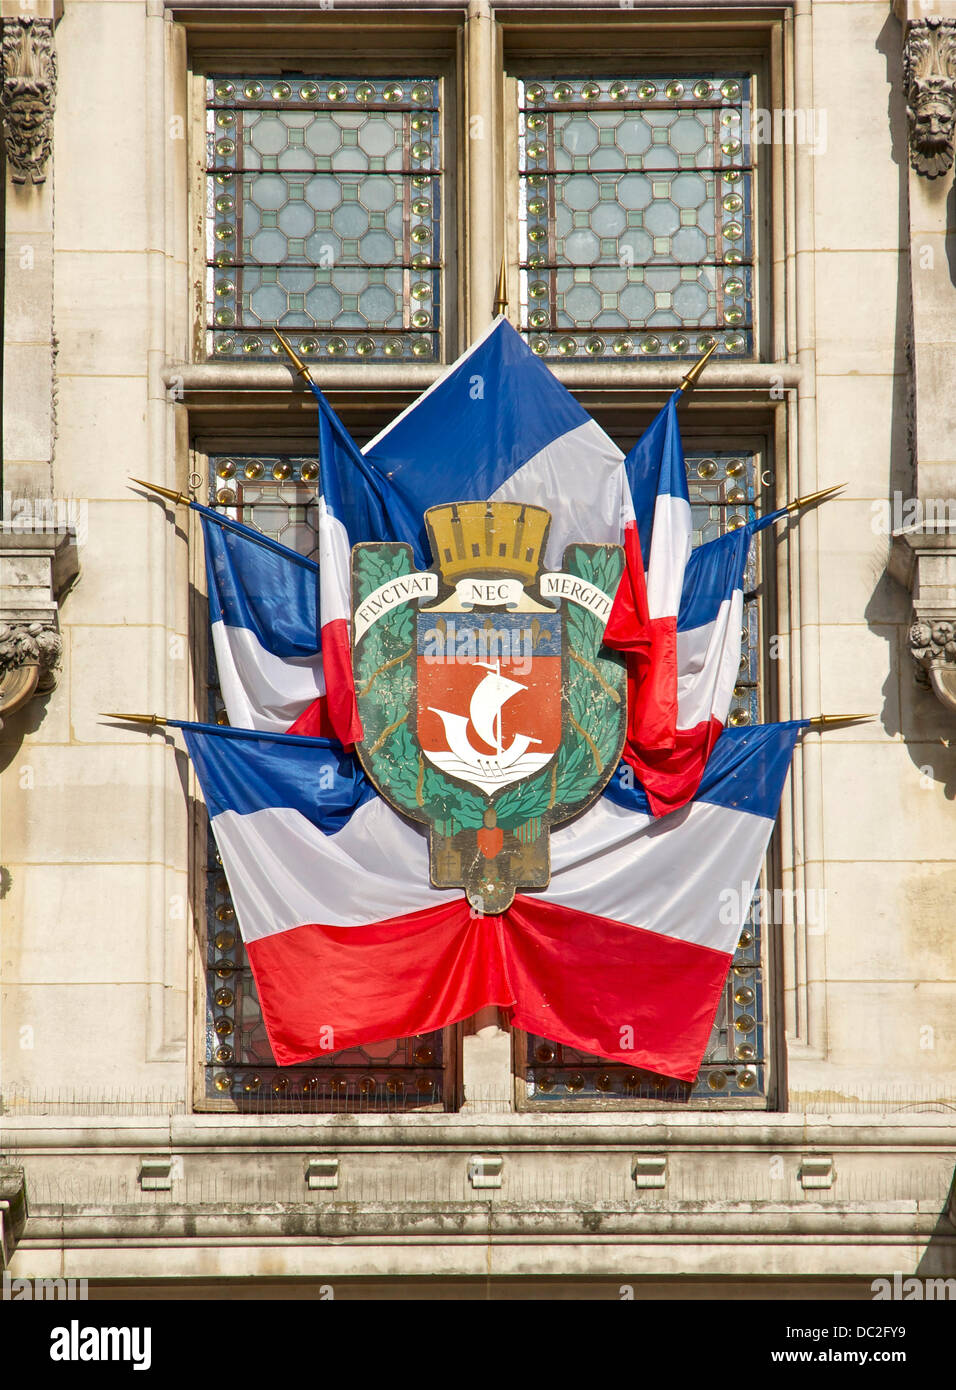 Dettaglio di una finestra decorata con bandiere francese e lo stemma della città, il municipio di Parigi, luglio 14, 2012. Foto Stock